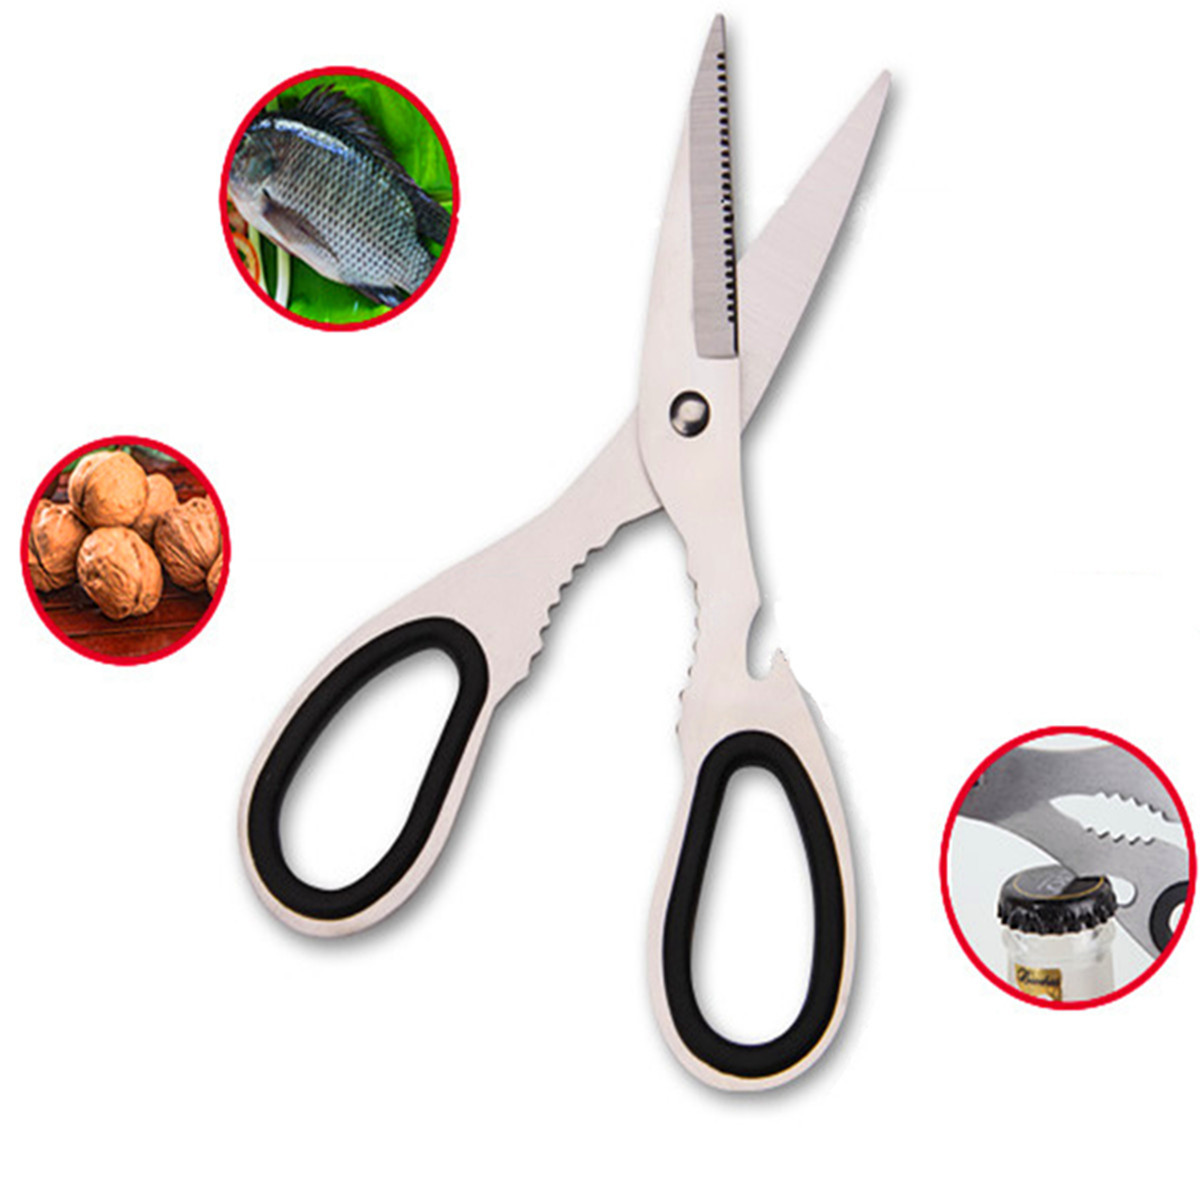 7.5'' Multifunctional Poultry shear cut Cutter Cook Kitchen scissor Nutcracker Bottle opener Stainless Steel Bone Tool